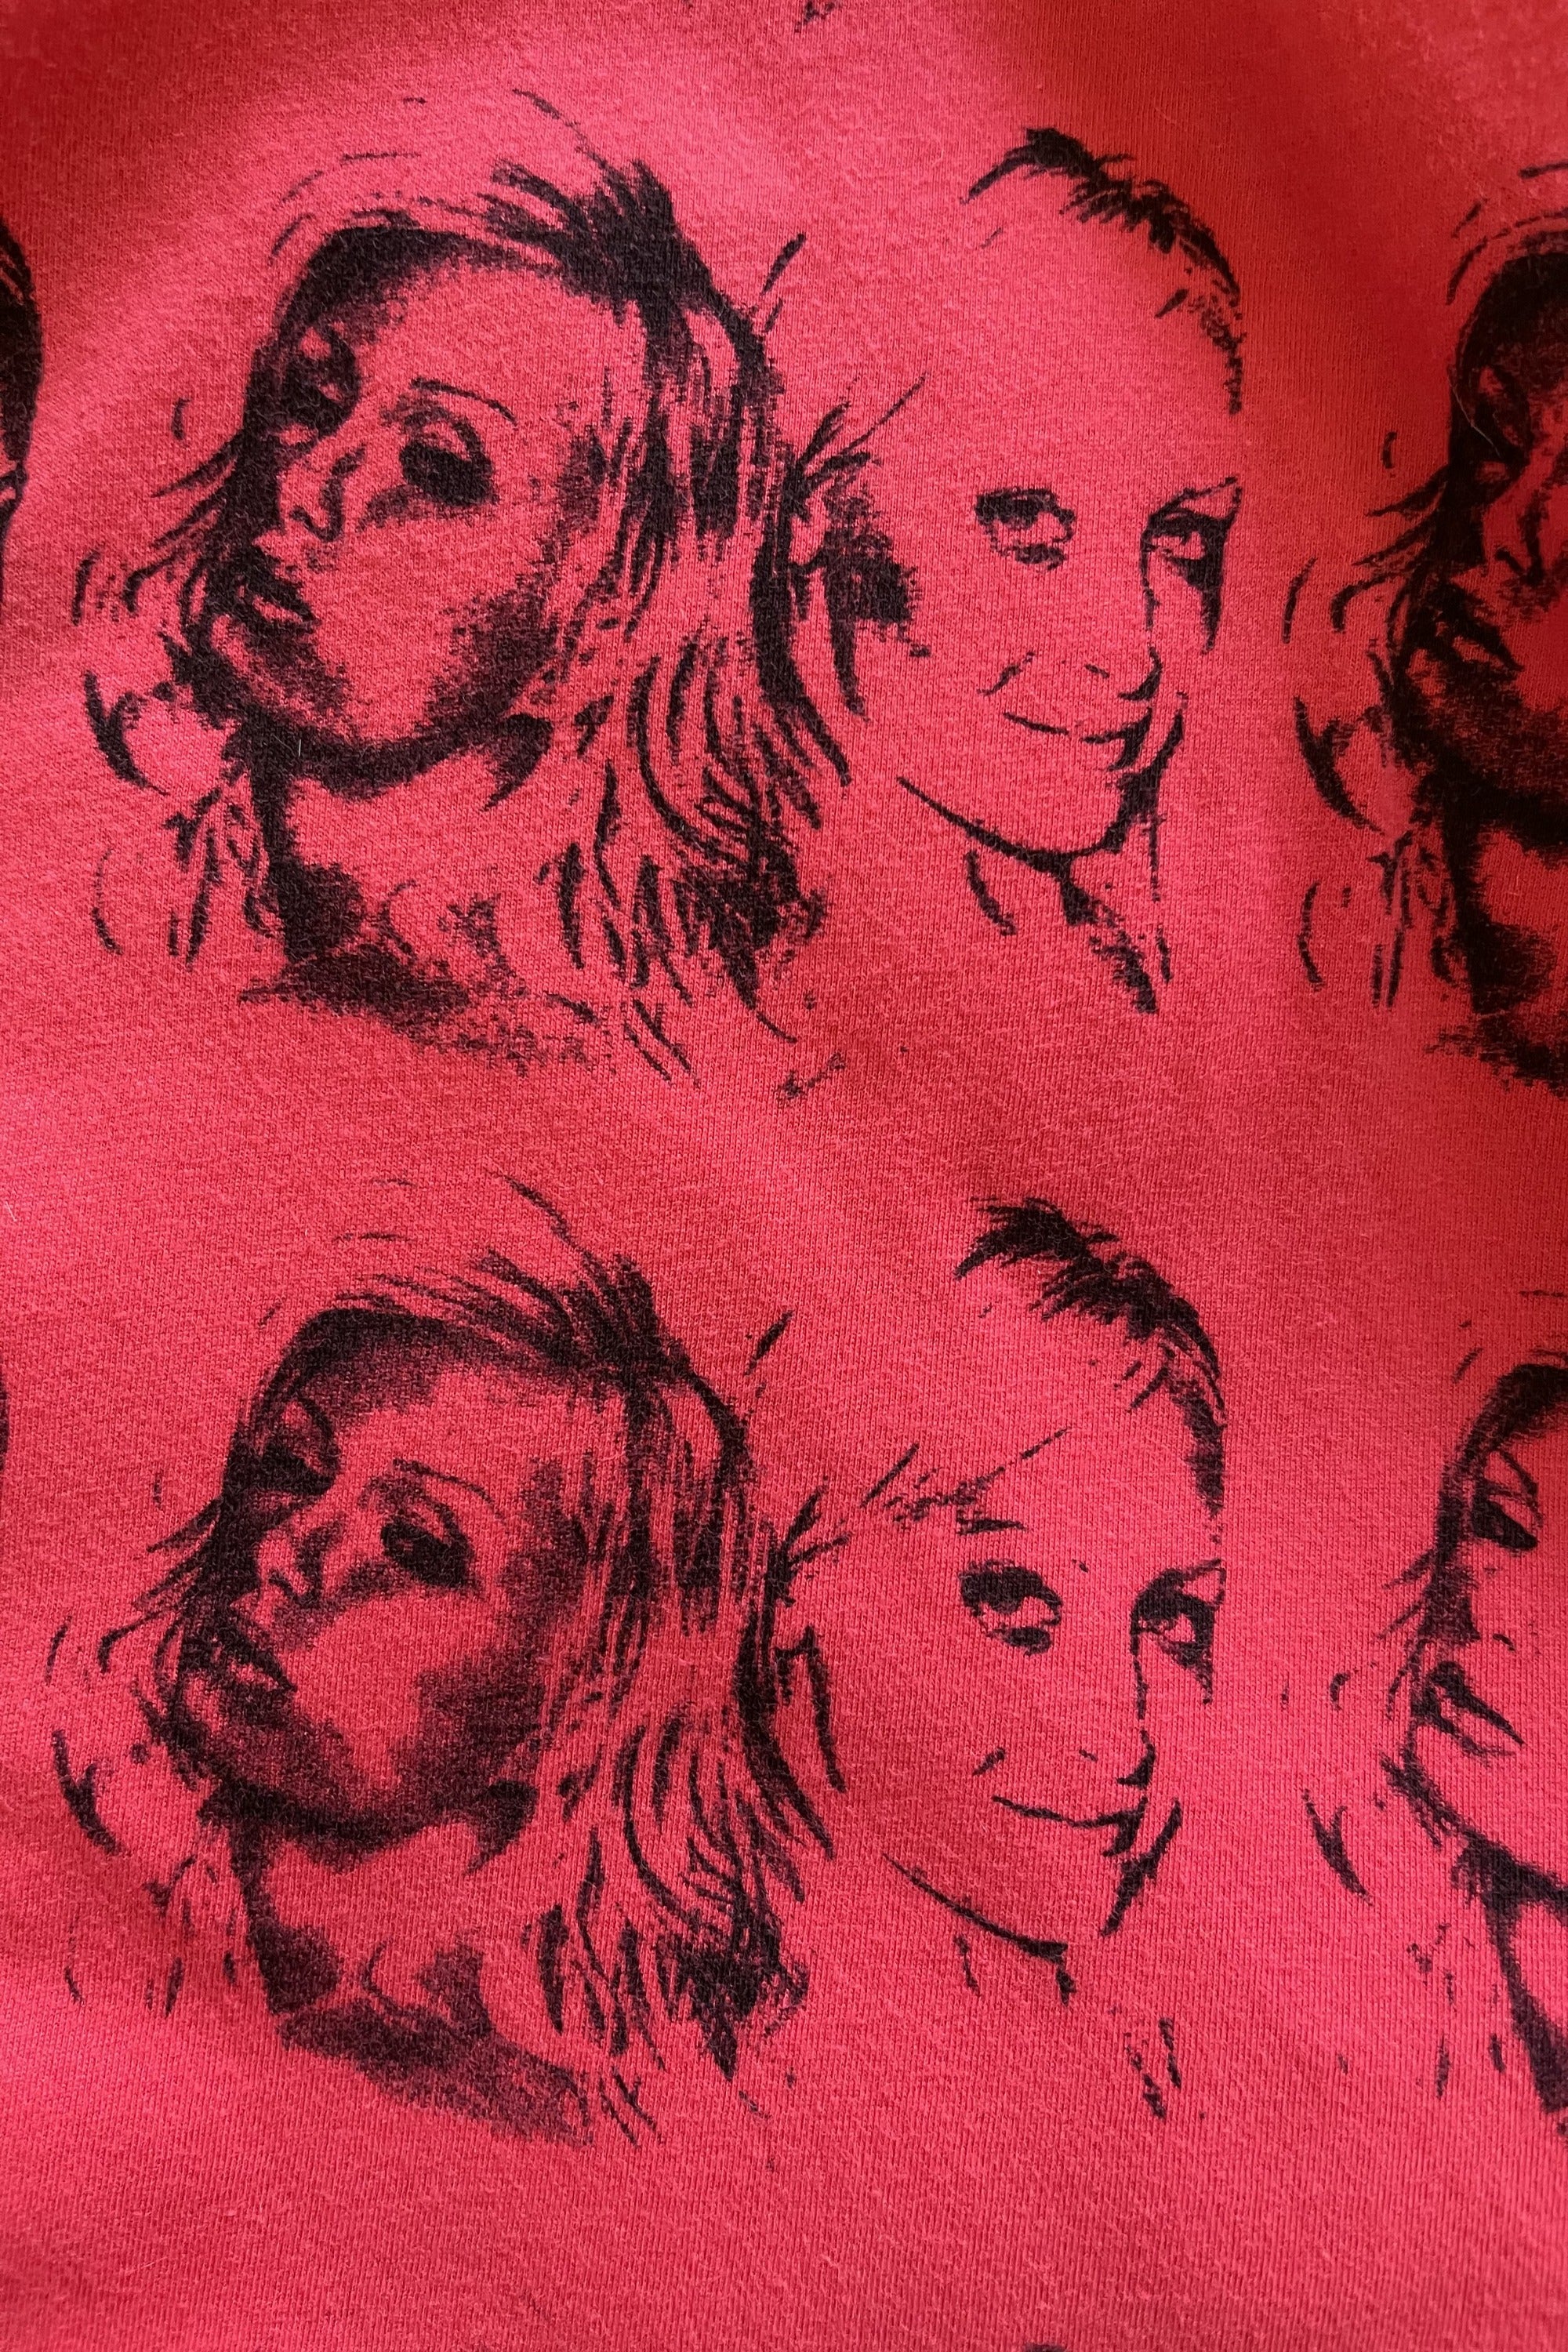 Vintage Paris Hilton & Nicole Richie T-shirt